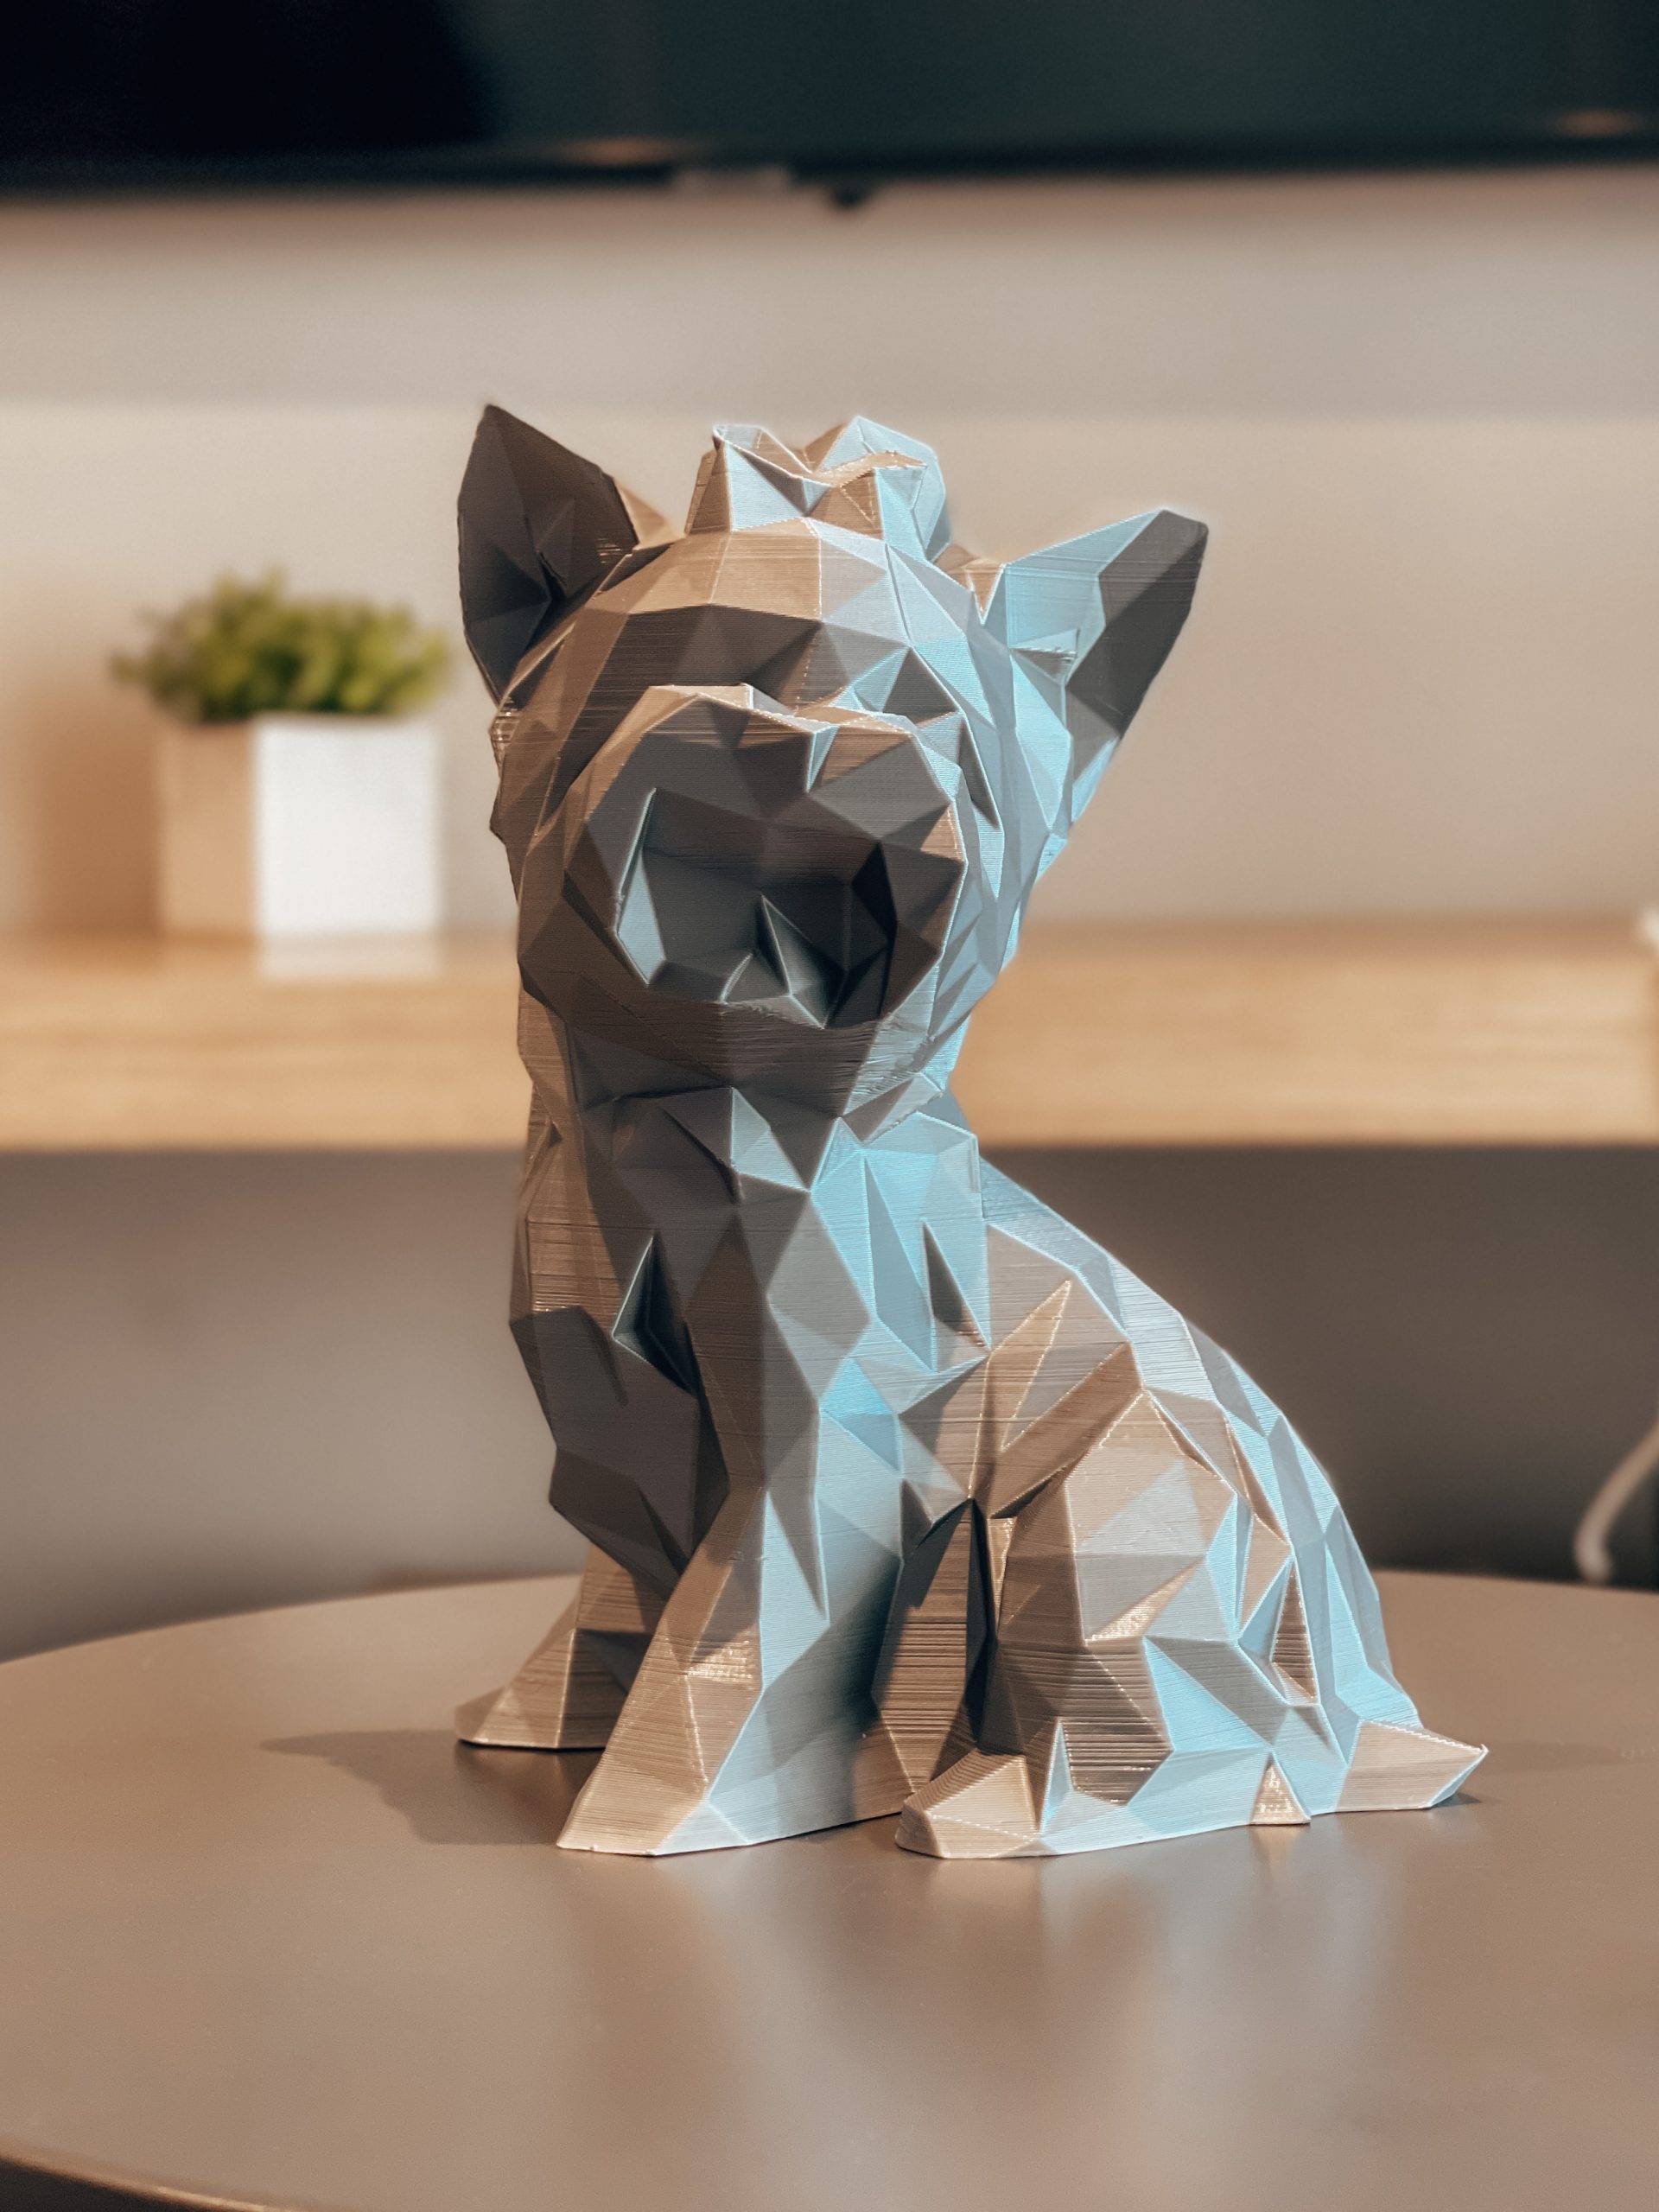 Animais 3D: gatos e cachorros chegam à busca do Google